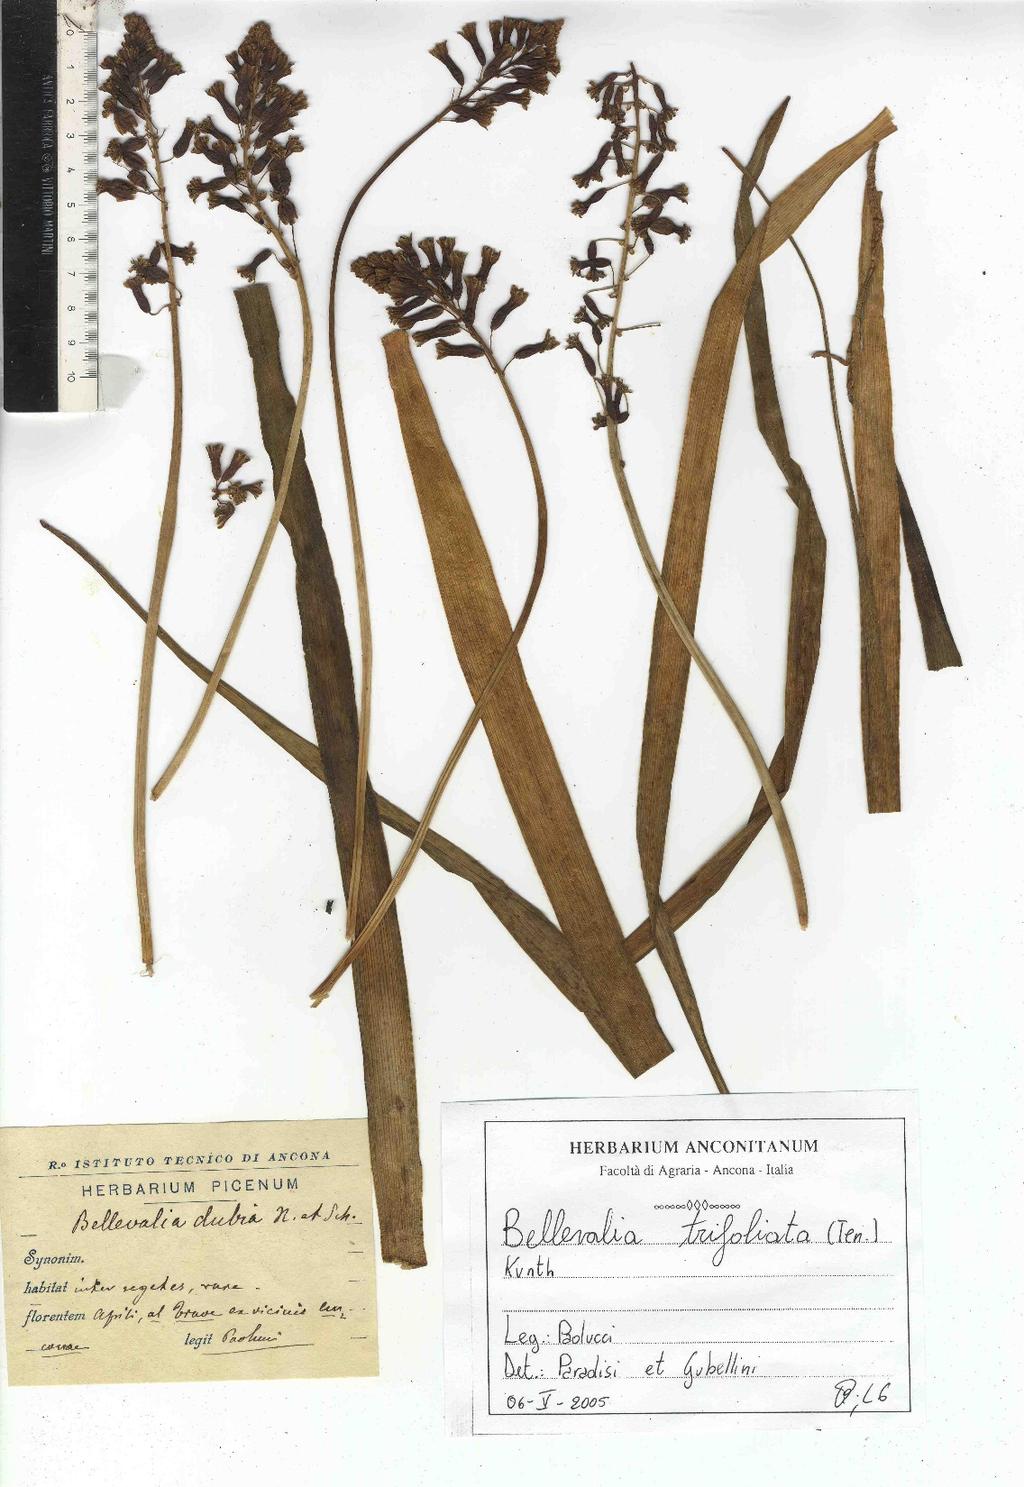 Bellevalia trifoliata (Ten.) Kunth Trave (Paolucci, 1890-91) La revisione del campione conservato nell'herbarium Picenum di L.